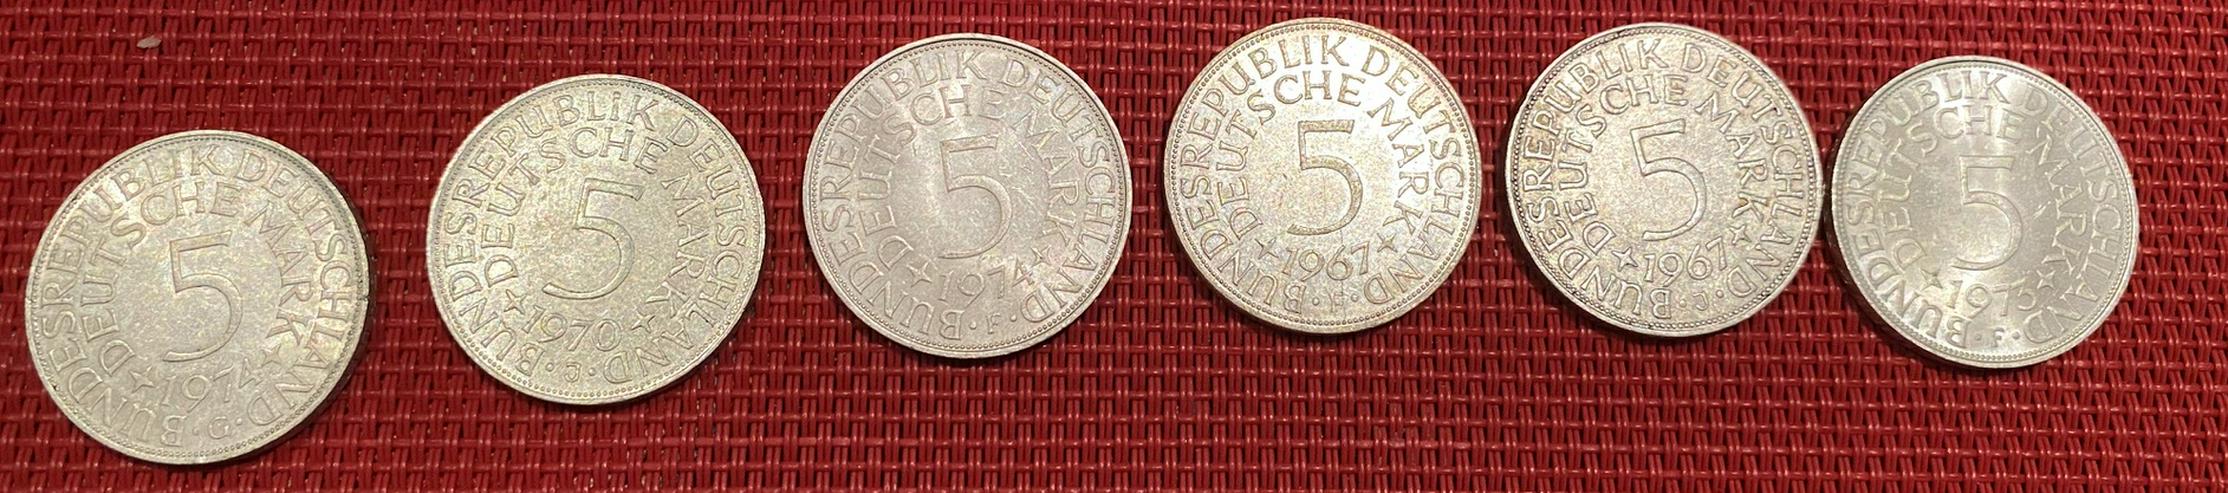 Bild 5: Konvolut Münzen (5DM,Euro-Gedenkmünzen,DM-Scheine)